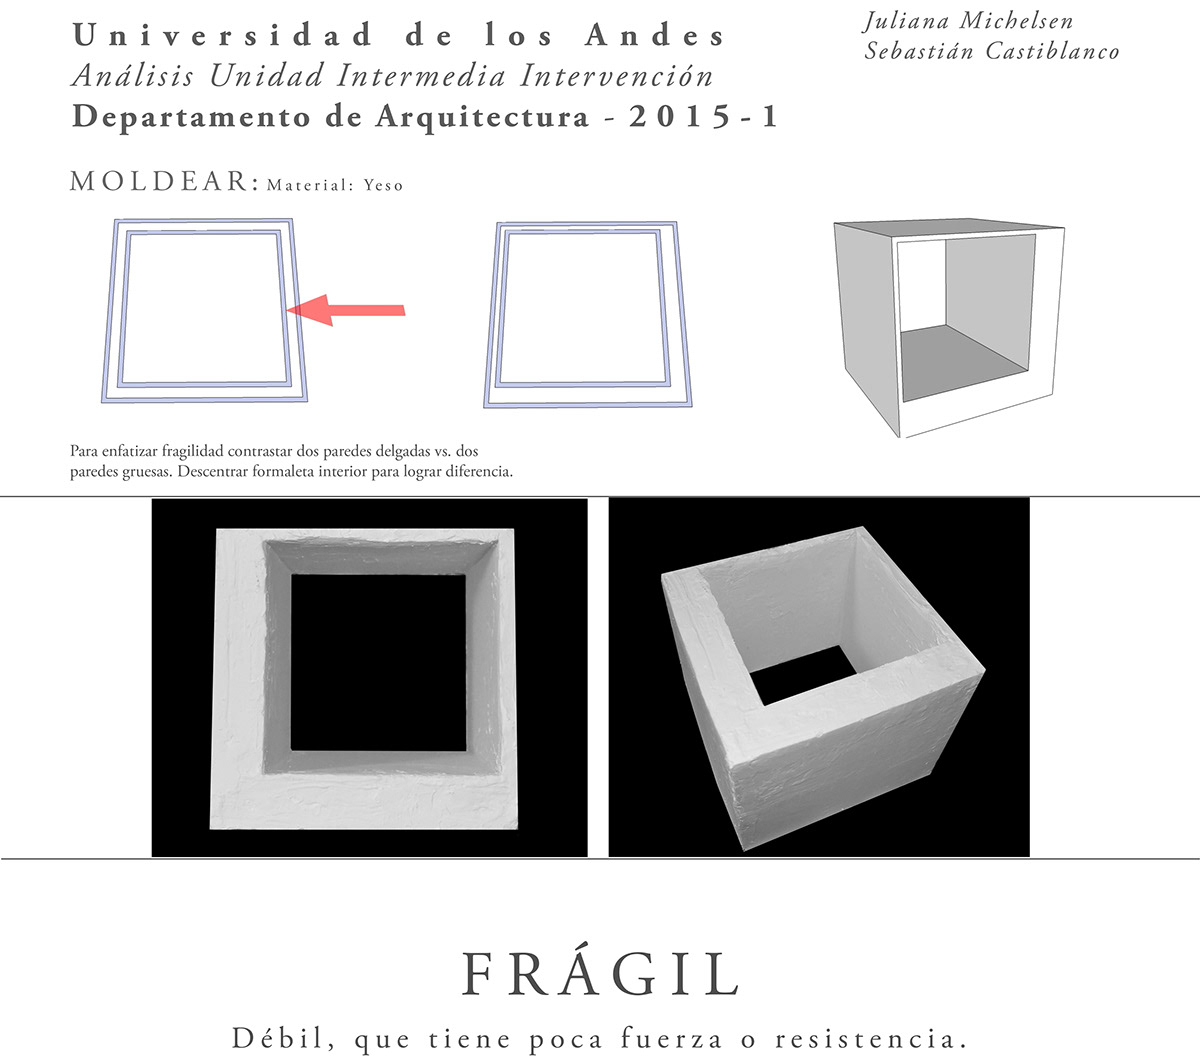 Materia Cubos tejer moldear conformar concepto Fragil